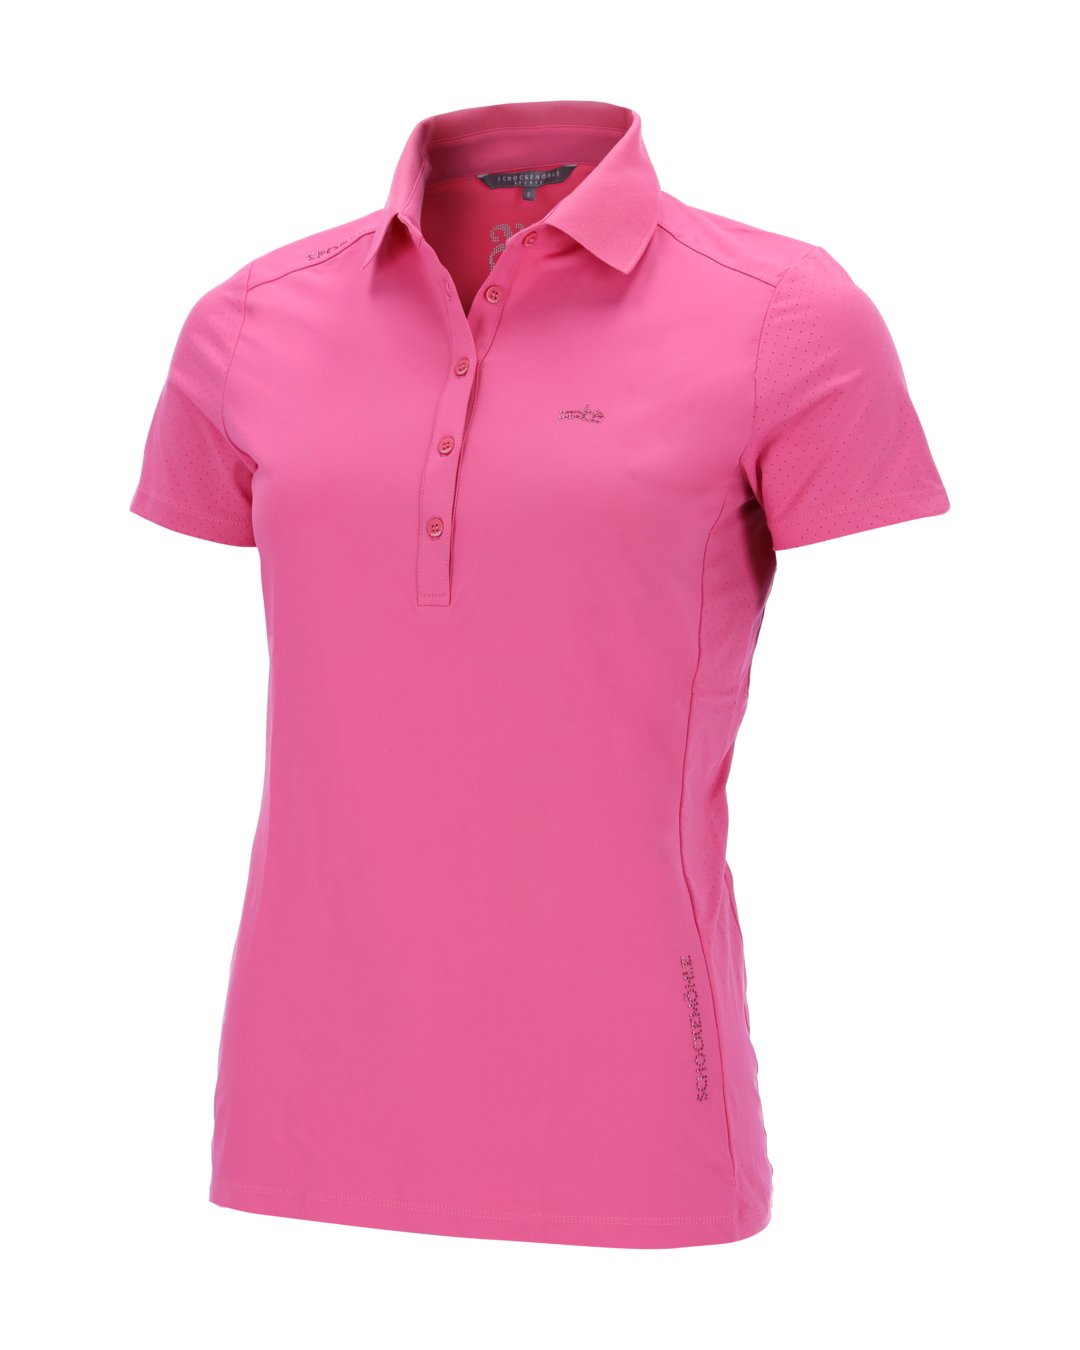 Poloshirt SPMilla Style Hot Pink L